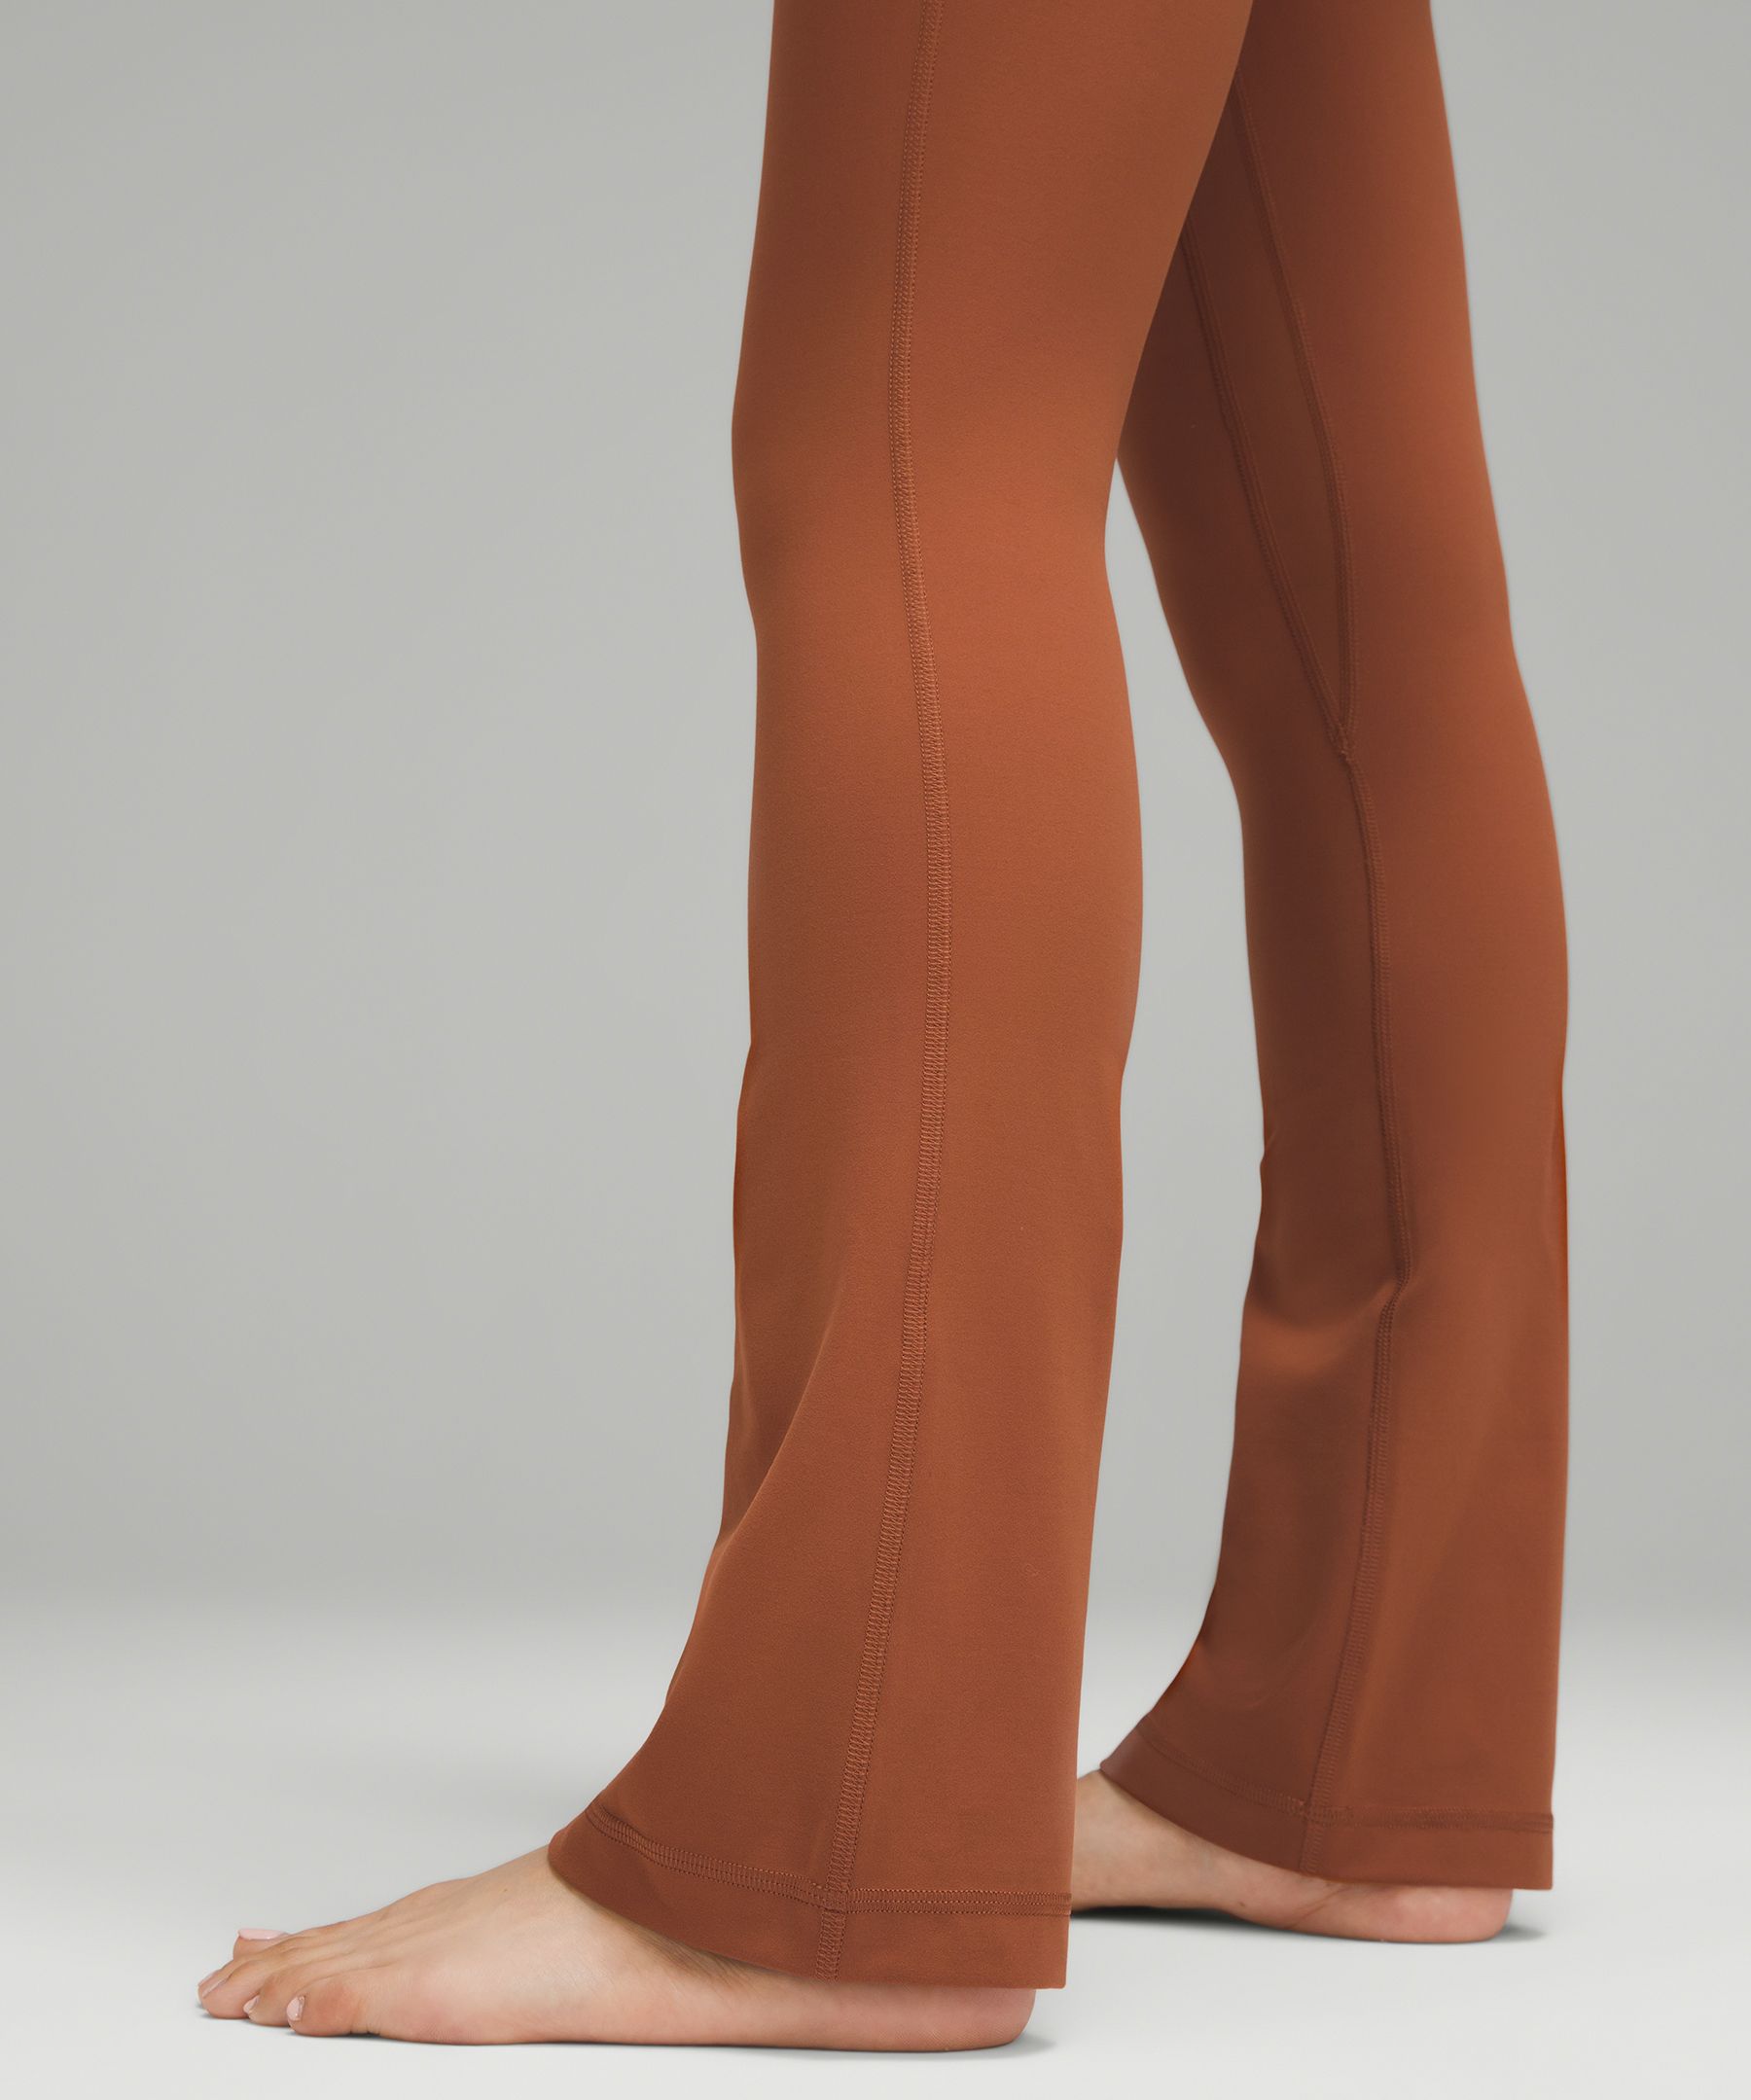 lululemon Align™ High-Rise Mini-Flared Pant *Extra Short, Women's  Leggings/Tights